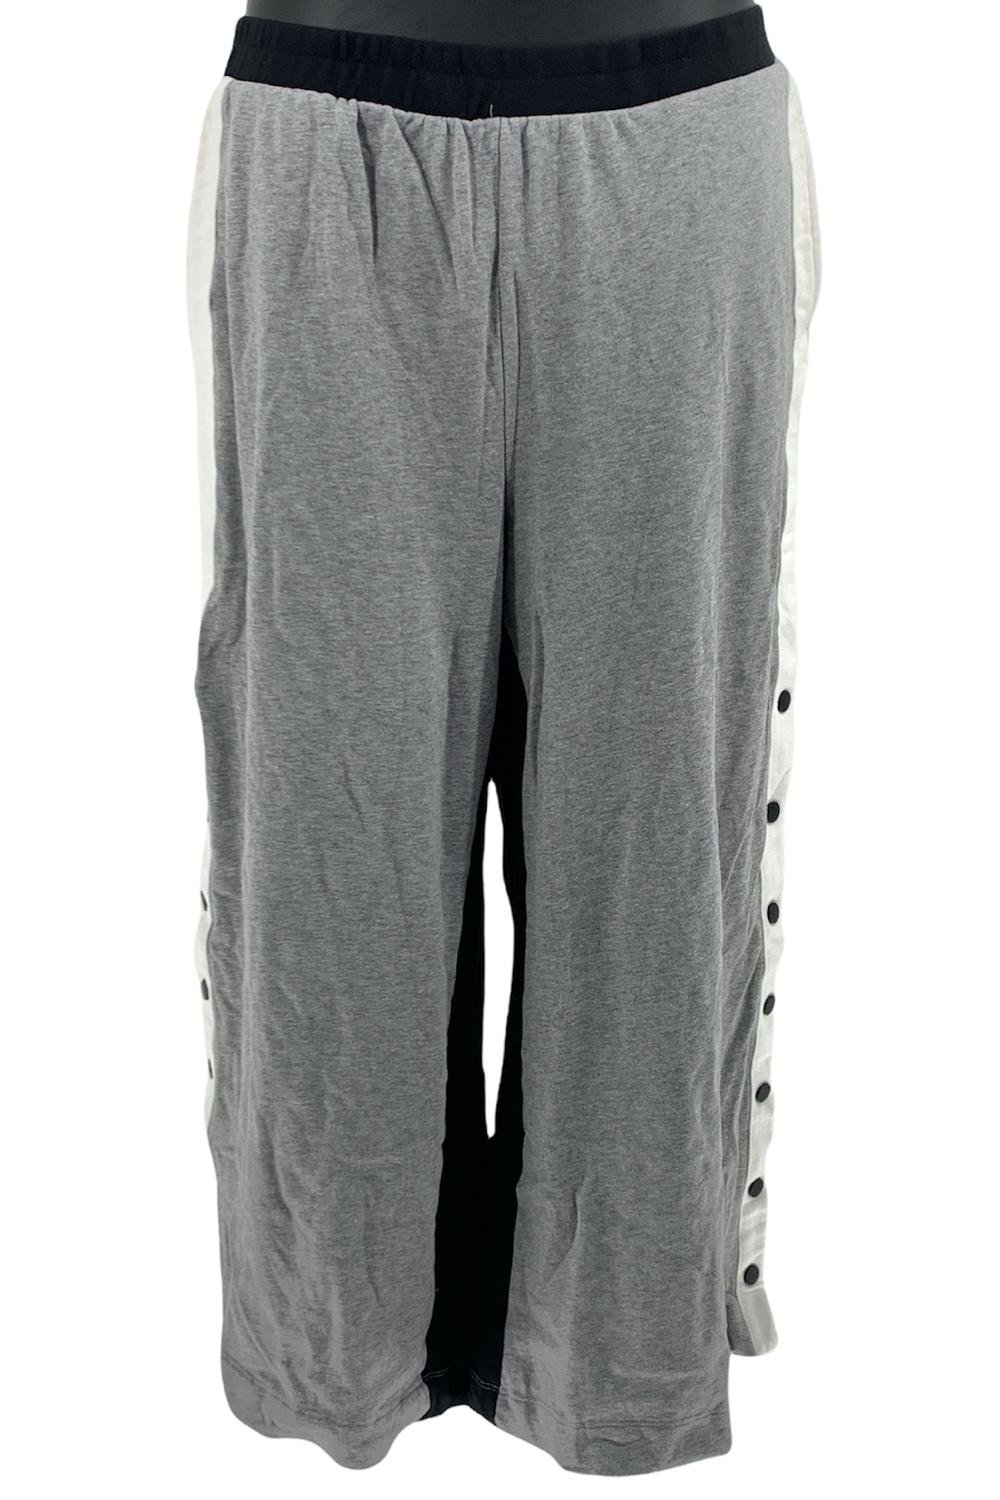 Cuddl Duds Gray Sweatpants Size XL (Tall) - 63% off